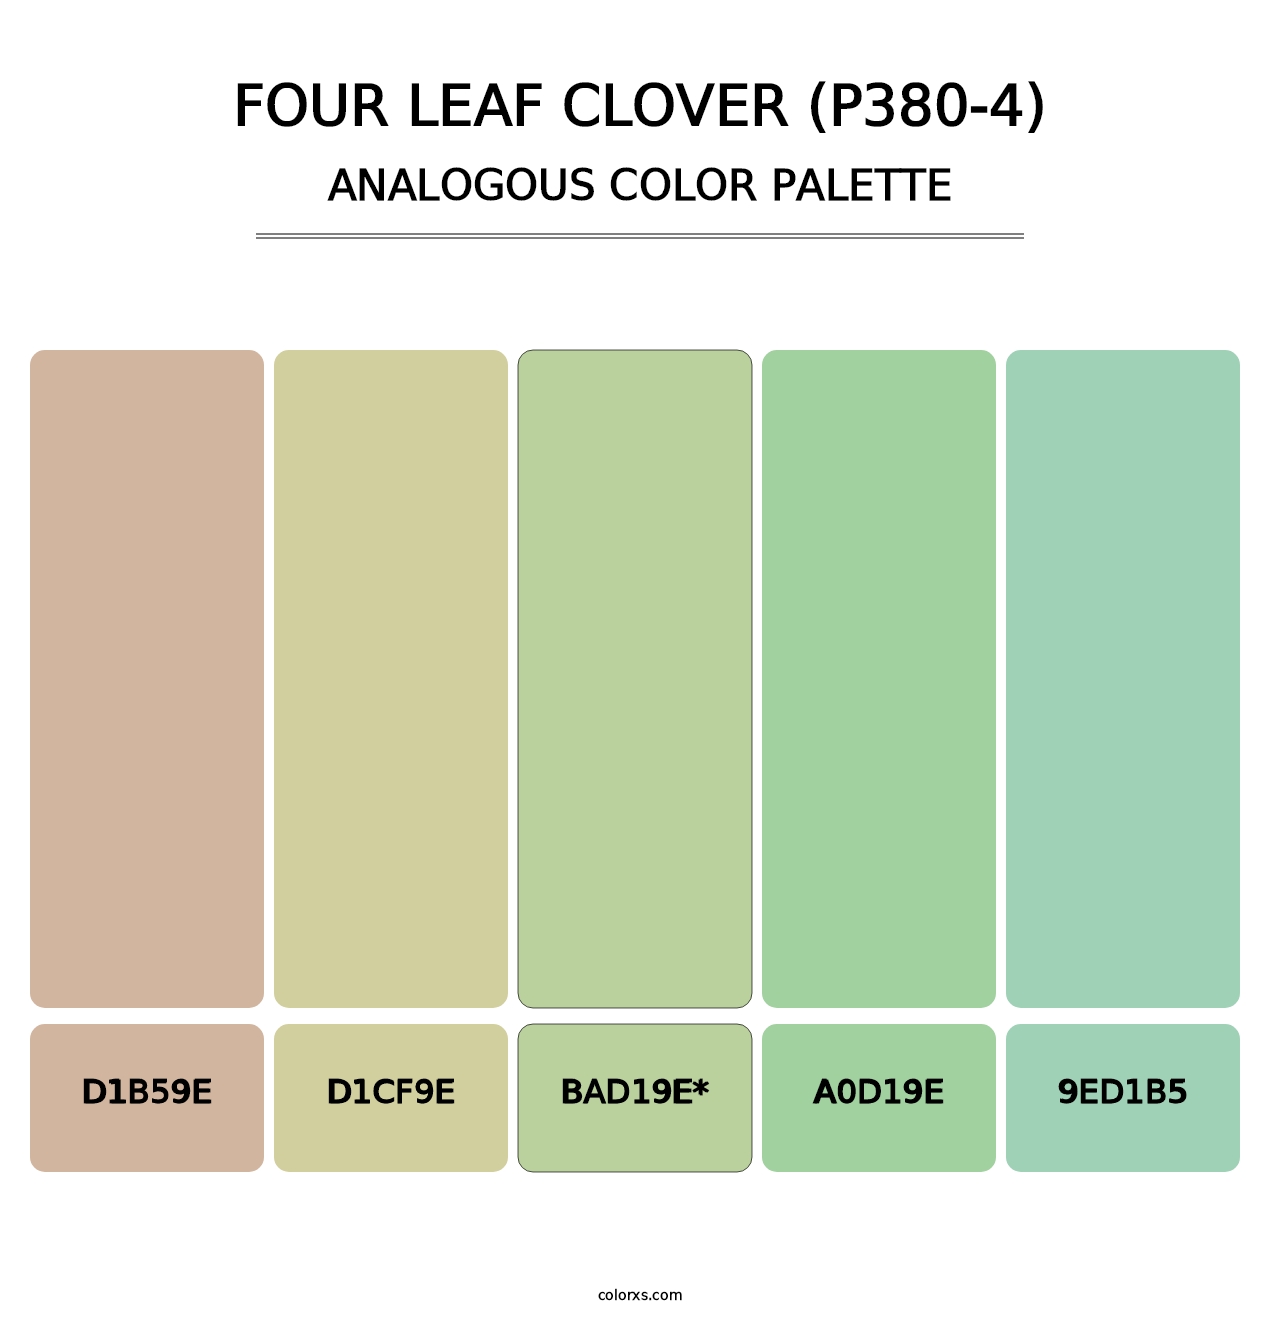 Four Leaf Clover (P380-4) - Analogous Color Palette